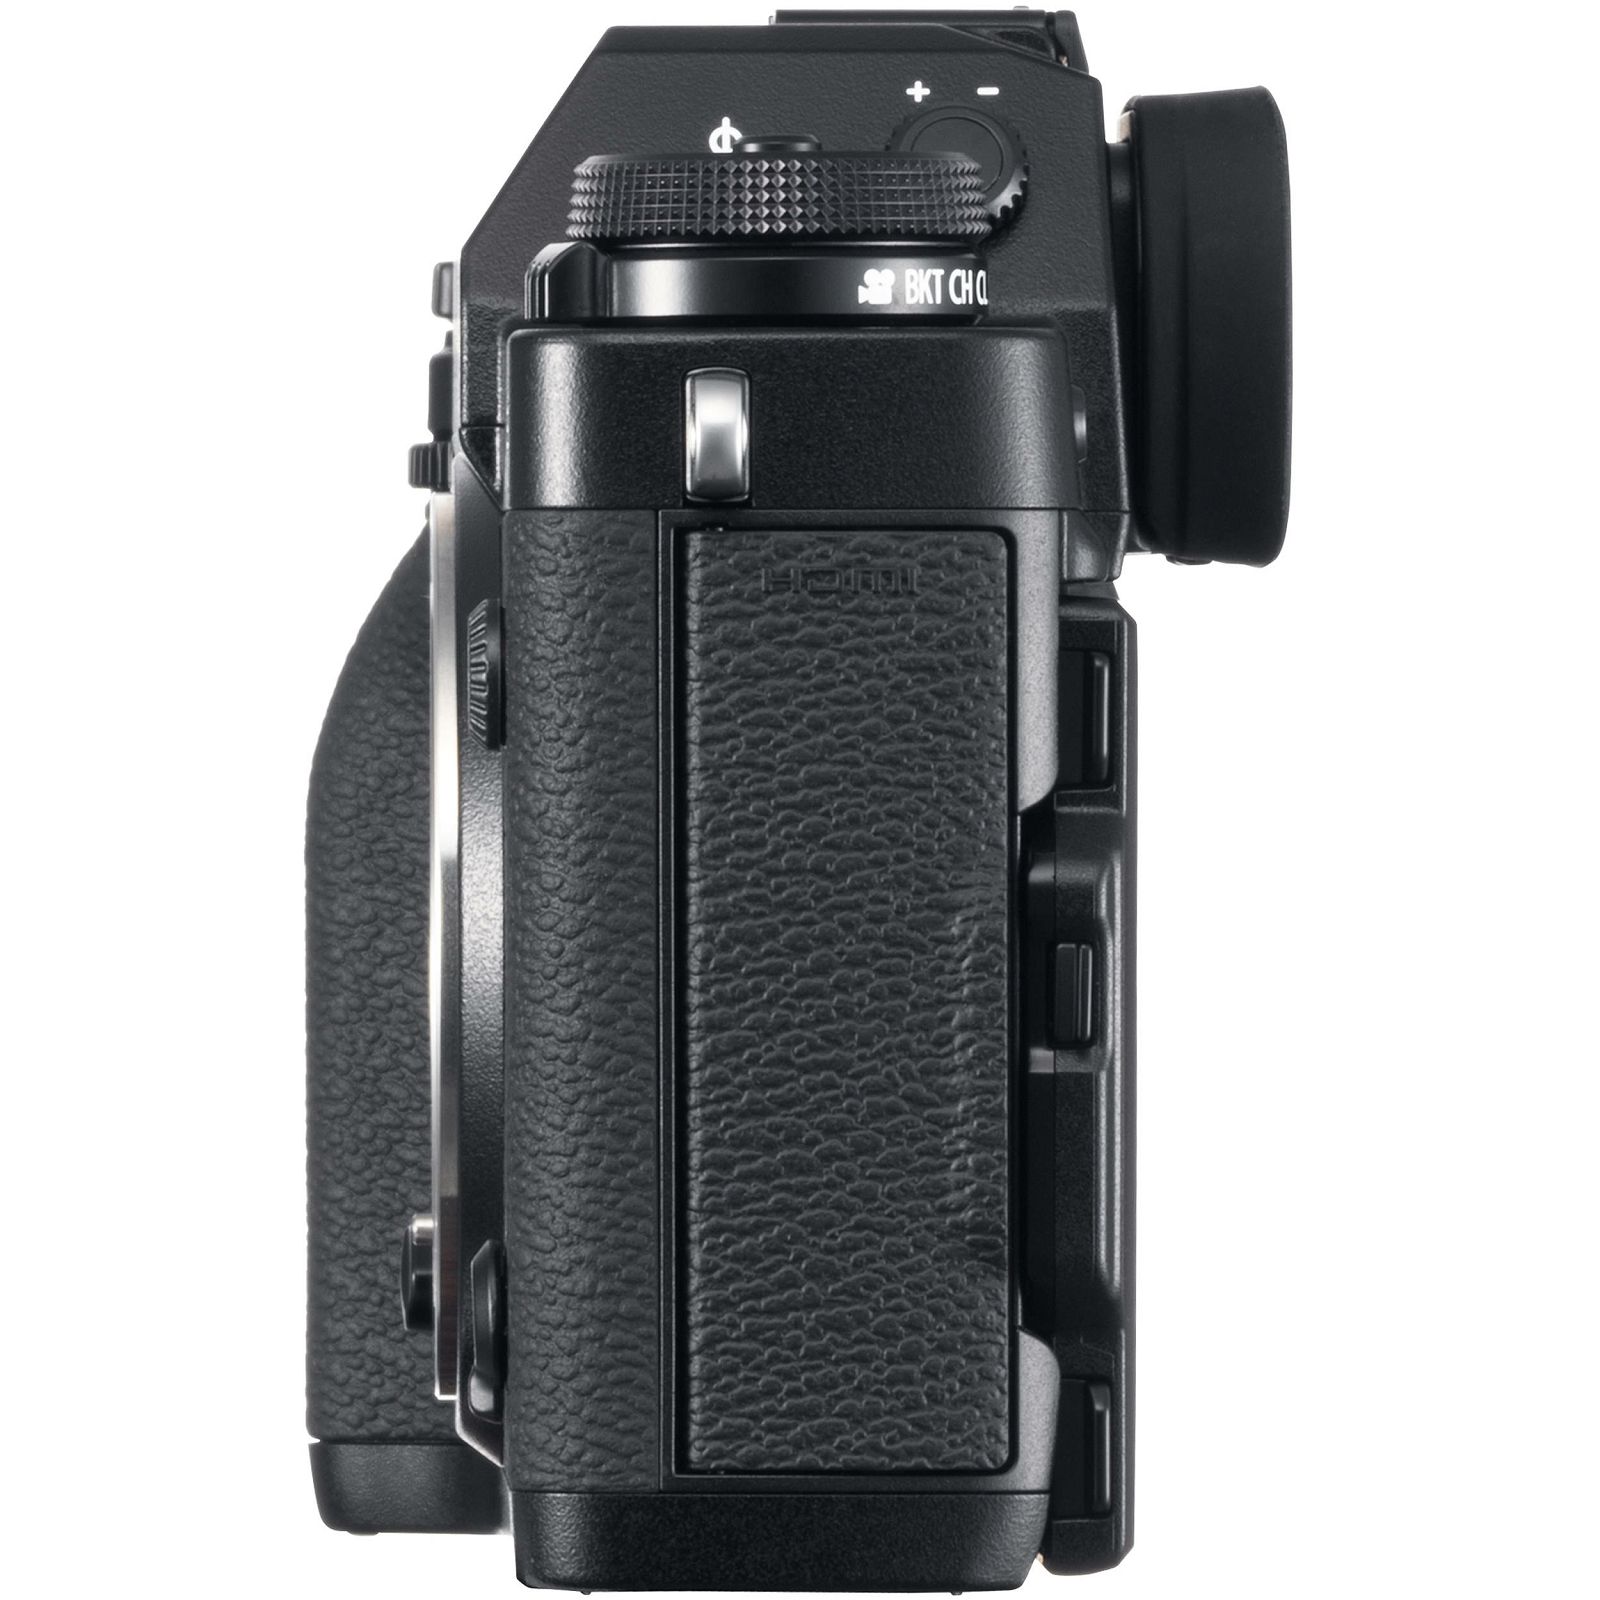 Fujifilm X-T3 Body Black crni Digitalni fotoaparat Mirrorless camera Fuji Finepix XT3 tijelo